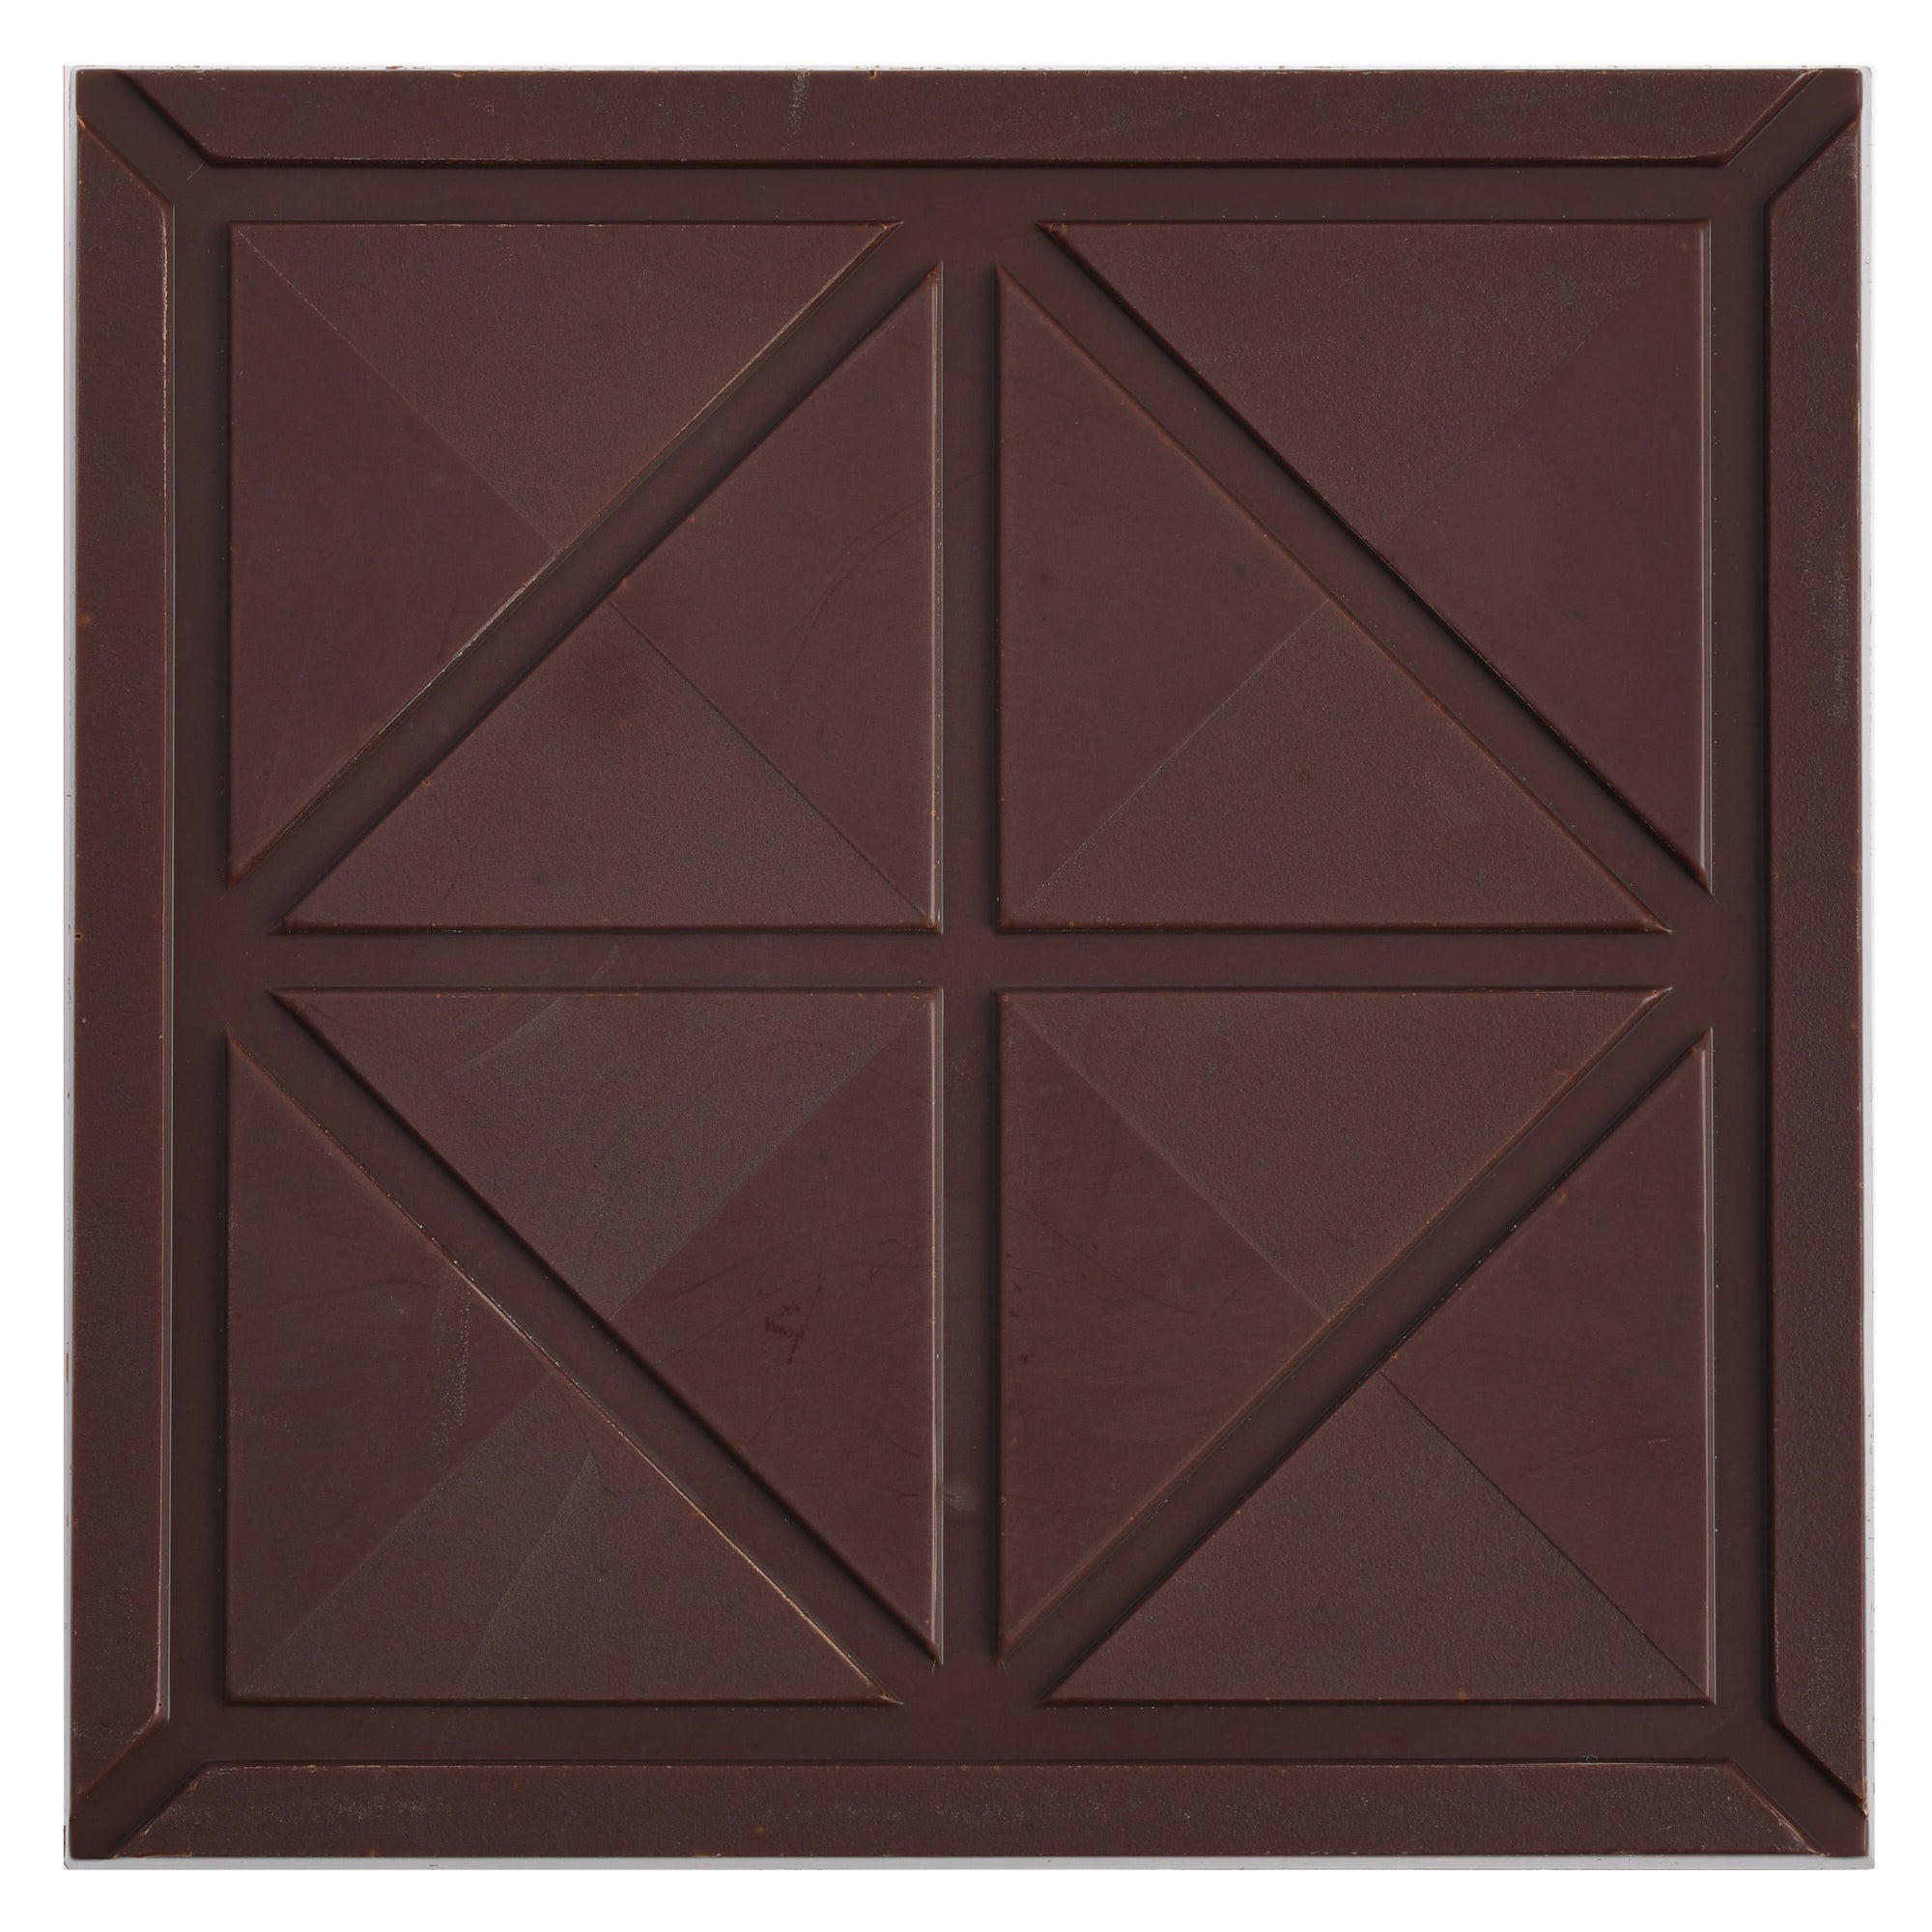 Peru 65% Dark chocolat tablet 